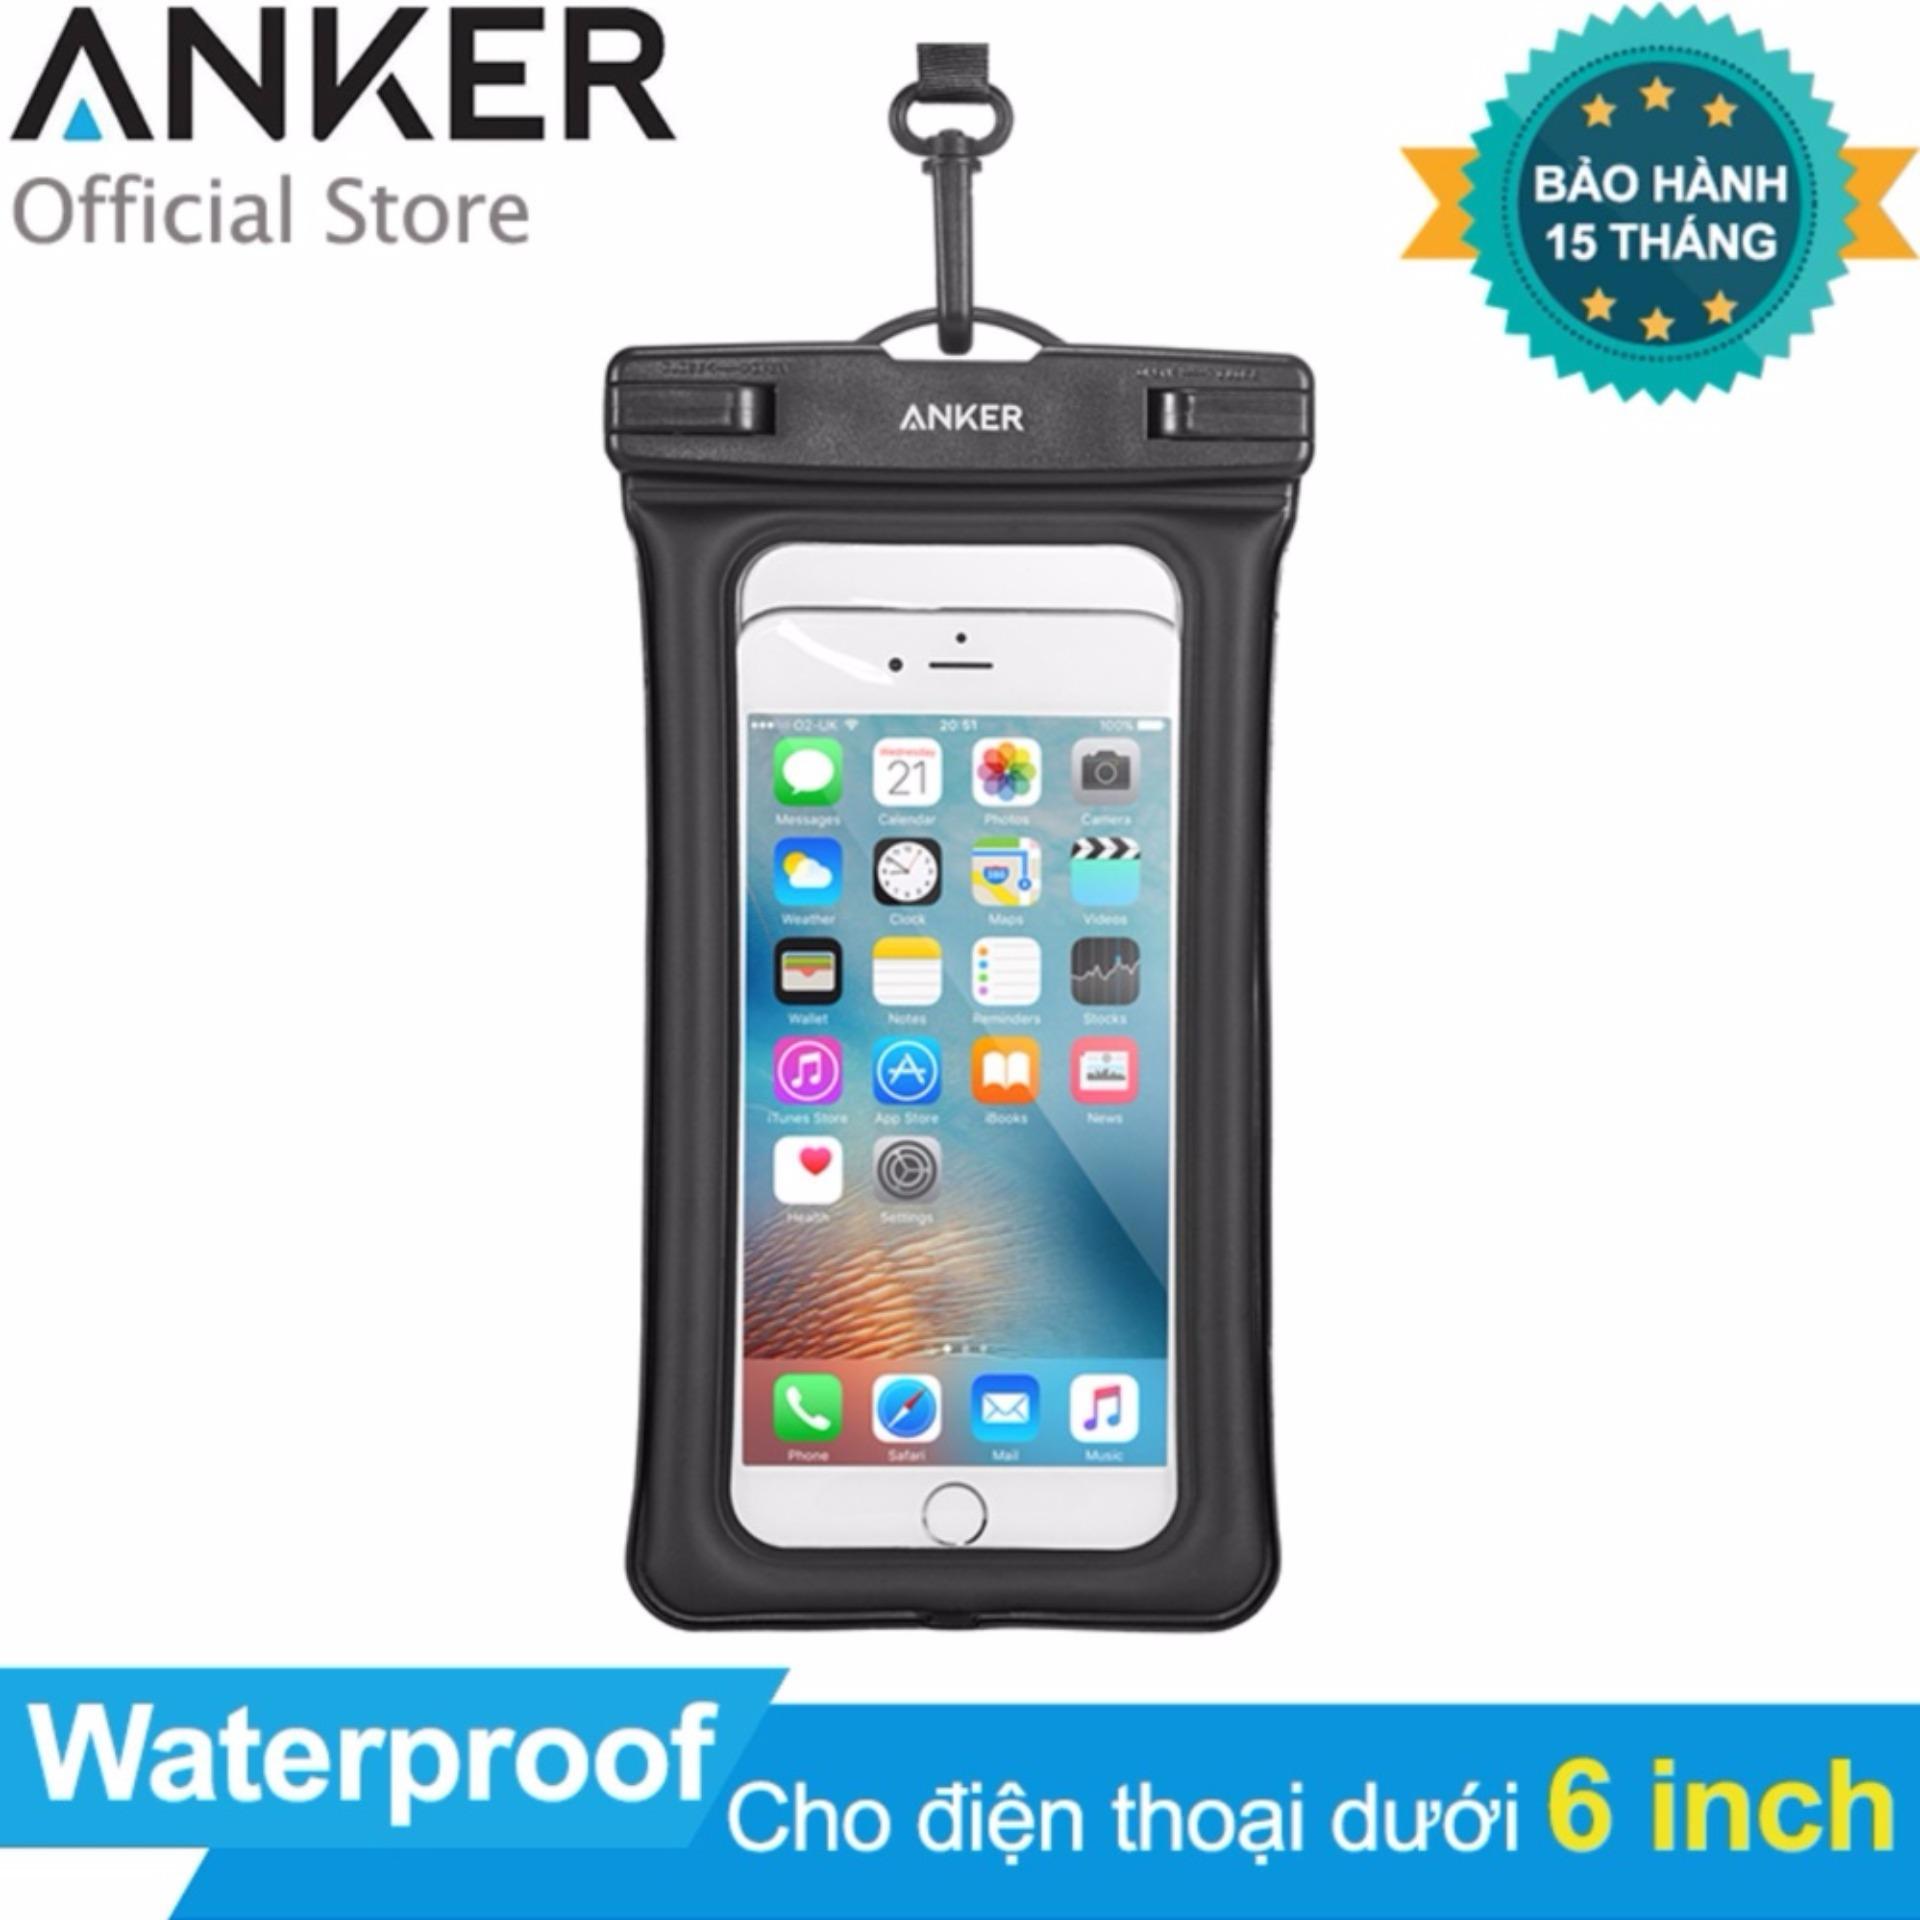 Túi chống nước ANKER Waterproof Case cho điện thoại dưới 6 inch (Trong suốt) - Hãng Phân Phối Chính Thức